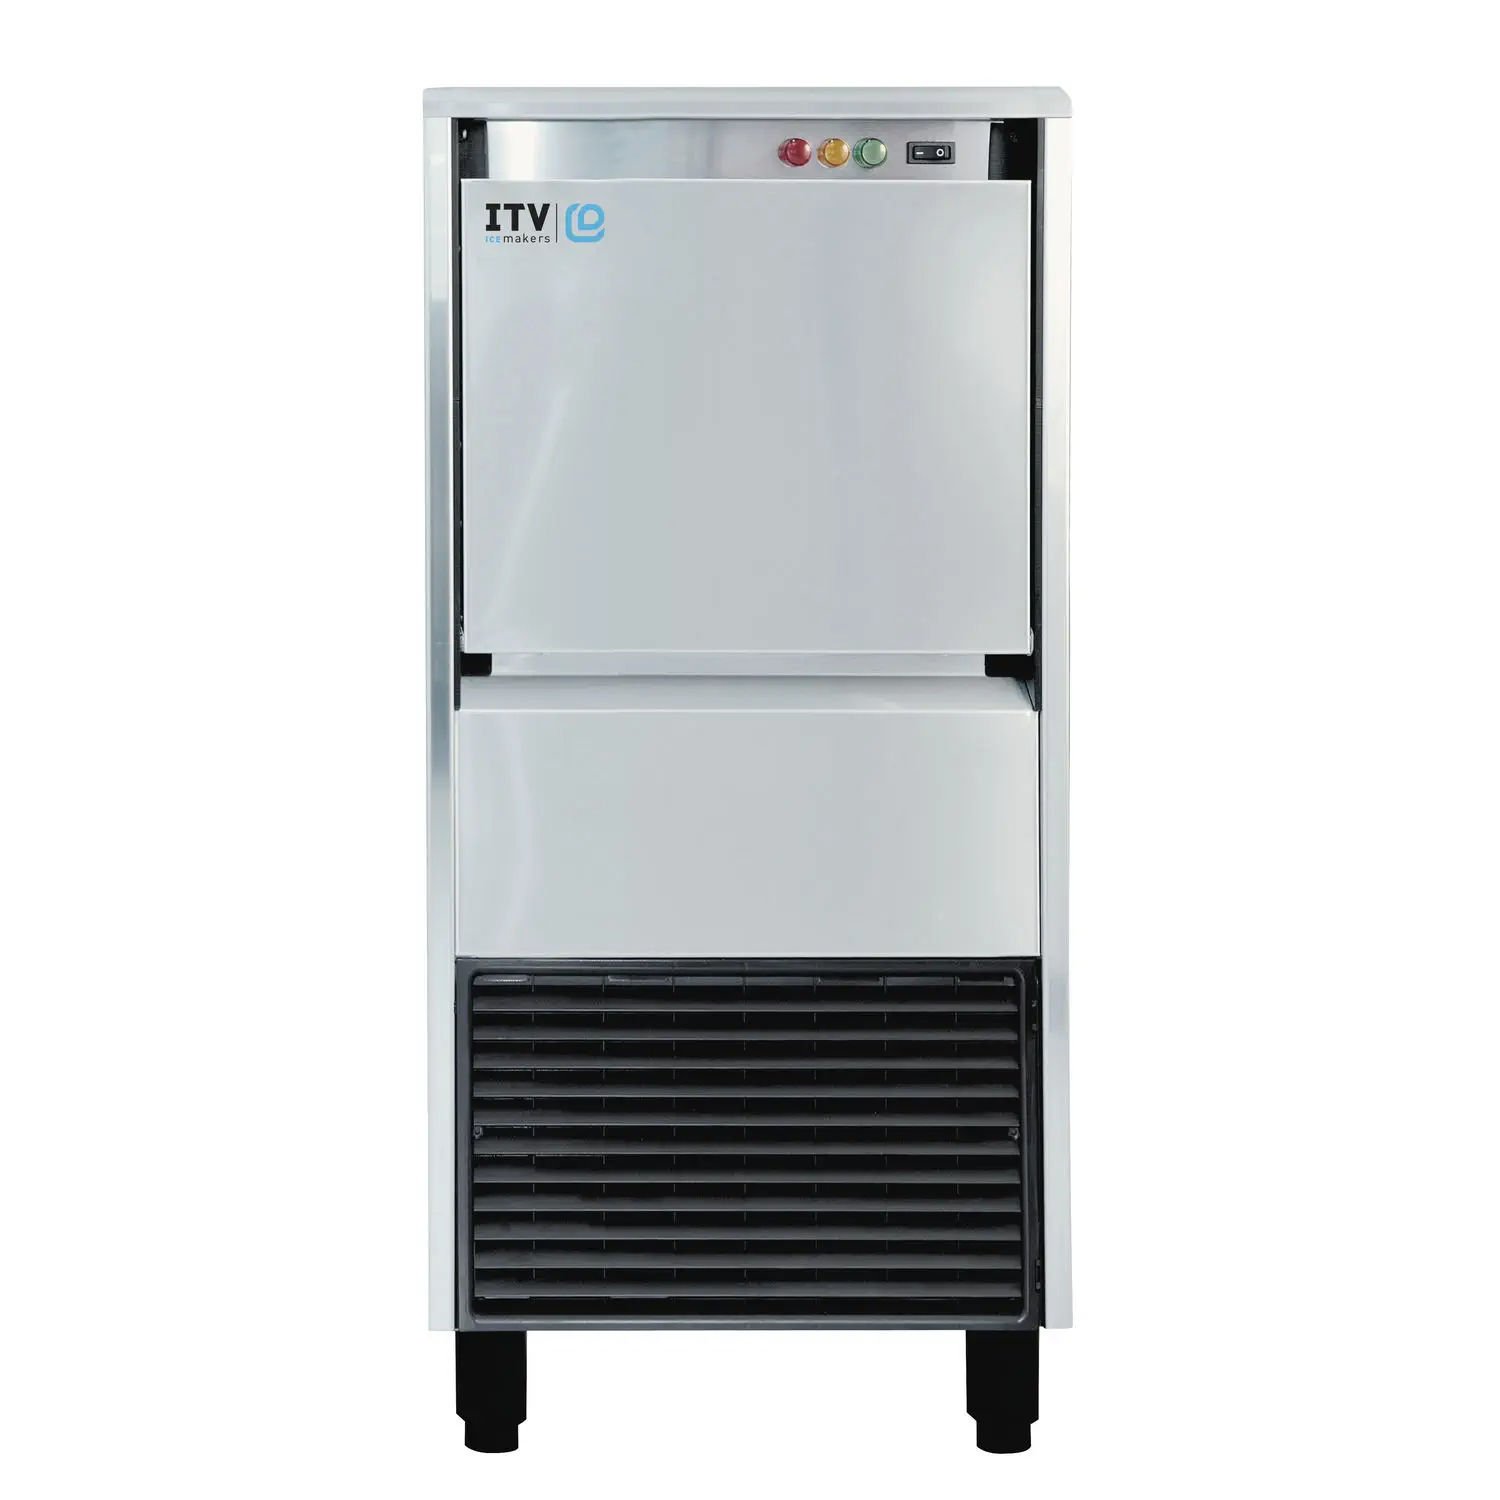 ITV IQ - 85C Kırık Buz Makinesi | 90 Kg/Gün-Üretim Kapasitesi Kapasiteli , 20 Kg Depolama Hacmi